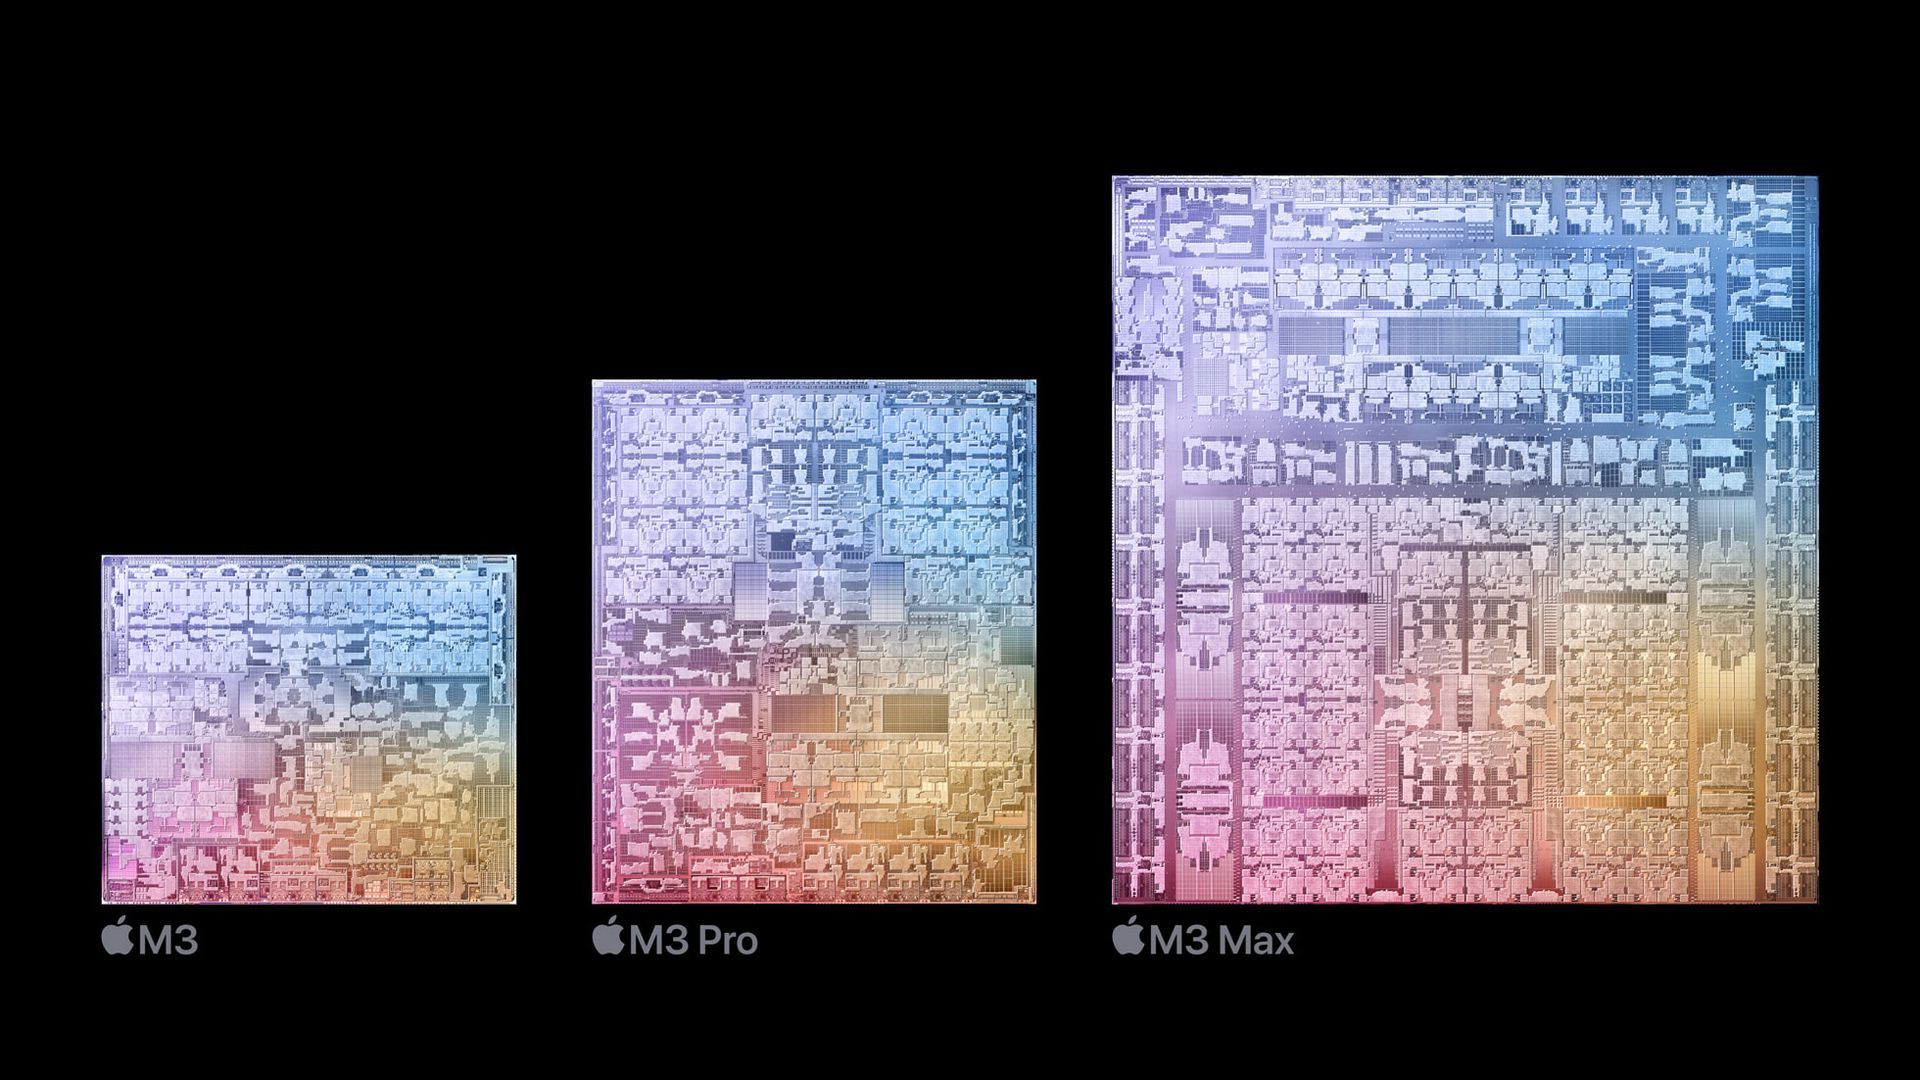 M3, M3 Pro en M3 Max: de nieuwe chips van Apple uitgelegd